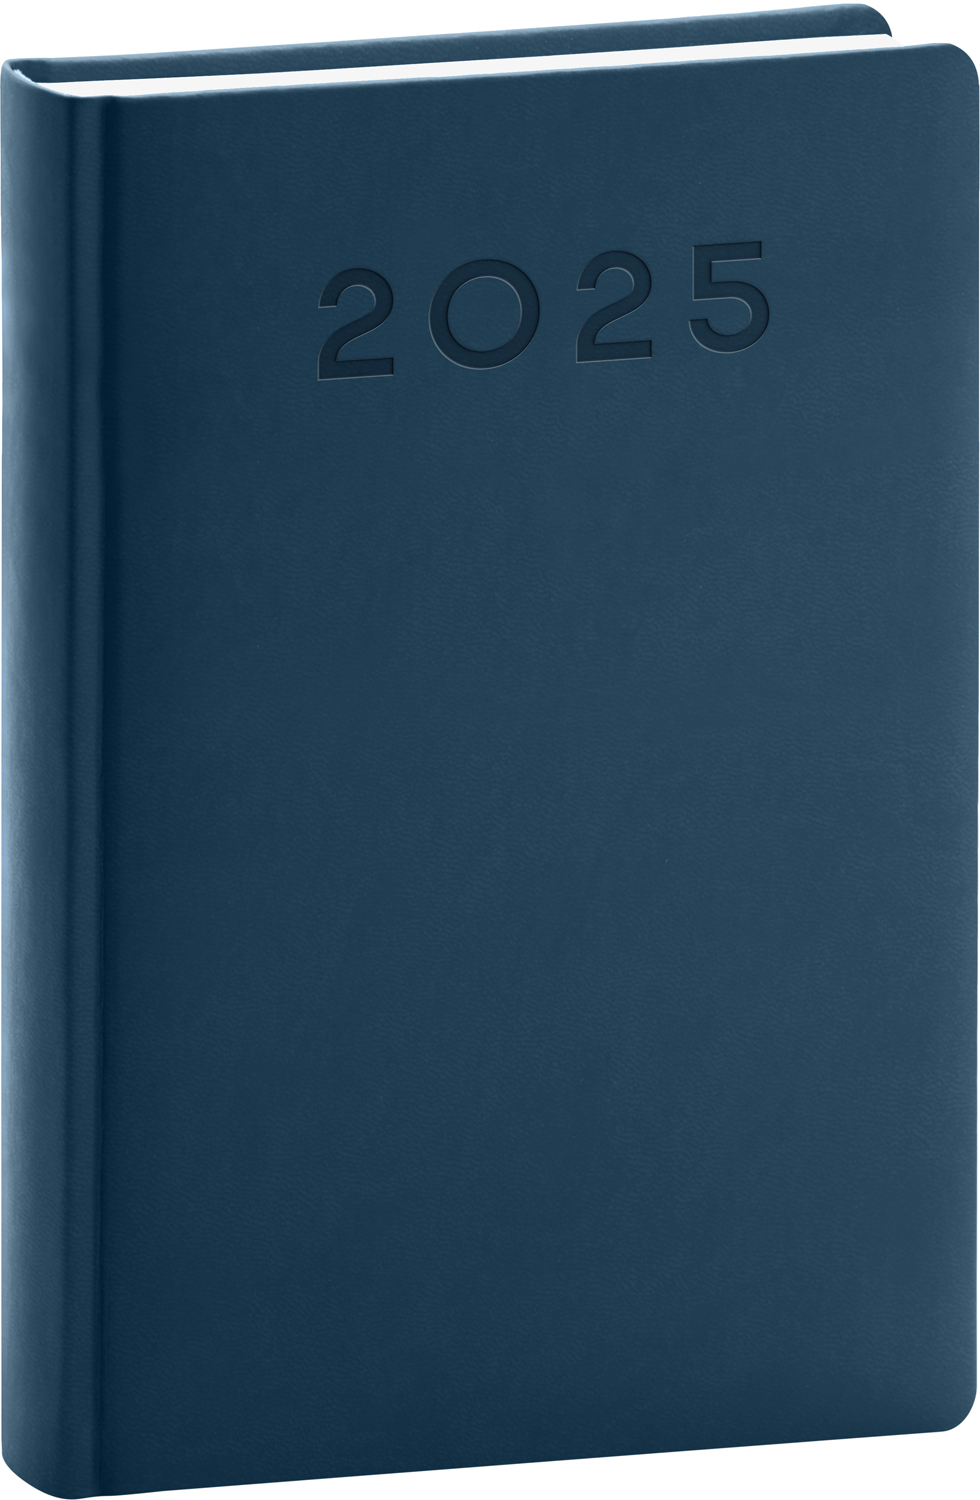 Denní diář Aprint Neo 2025, B6 - modrá